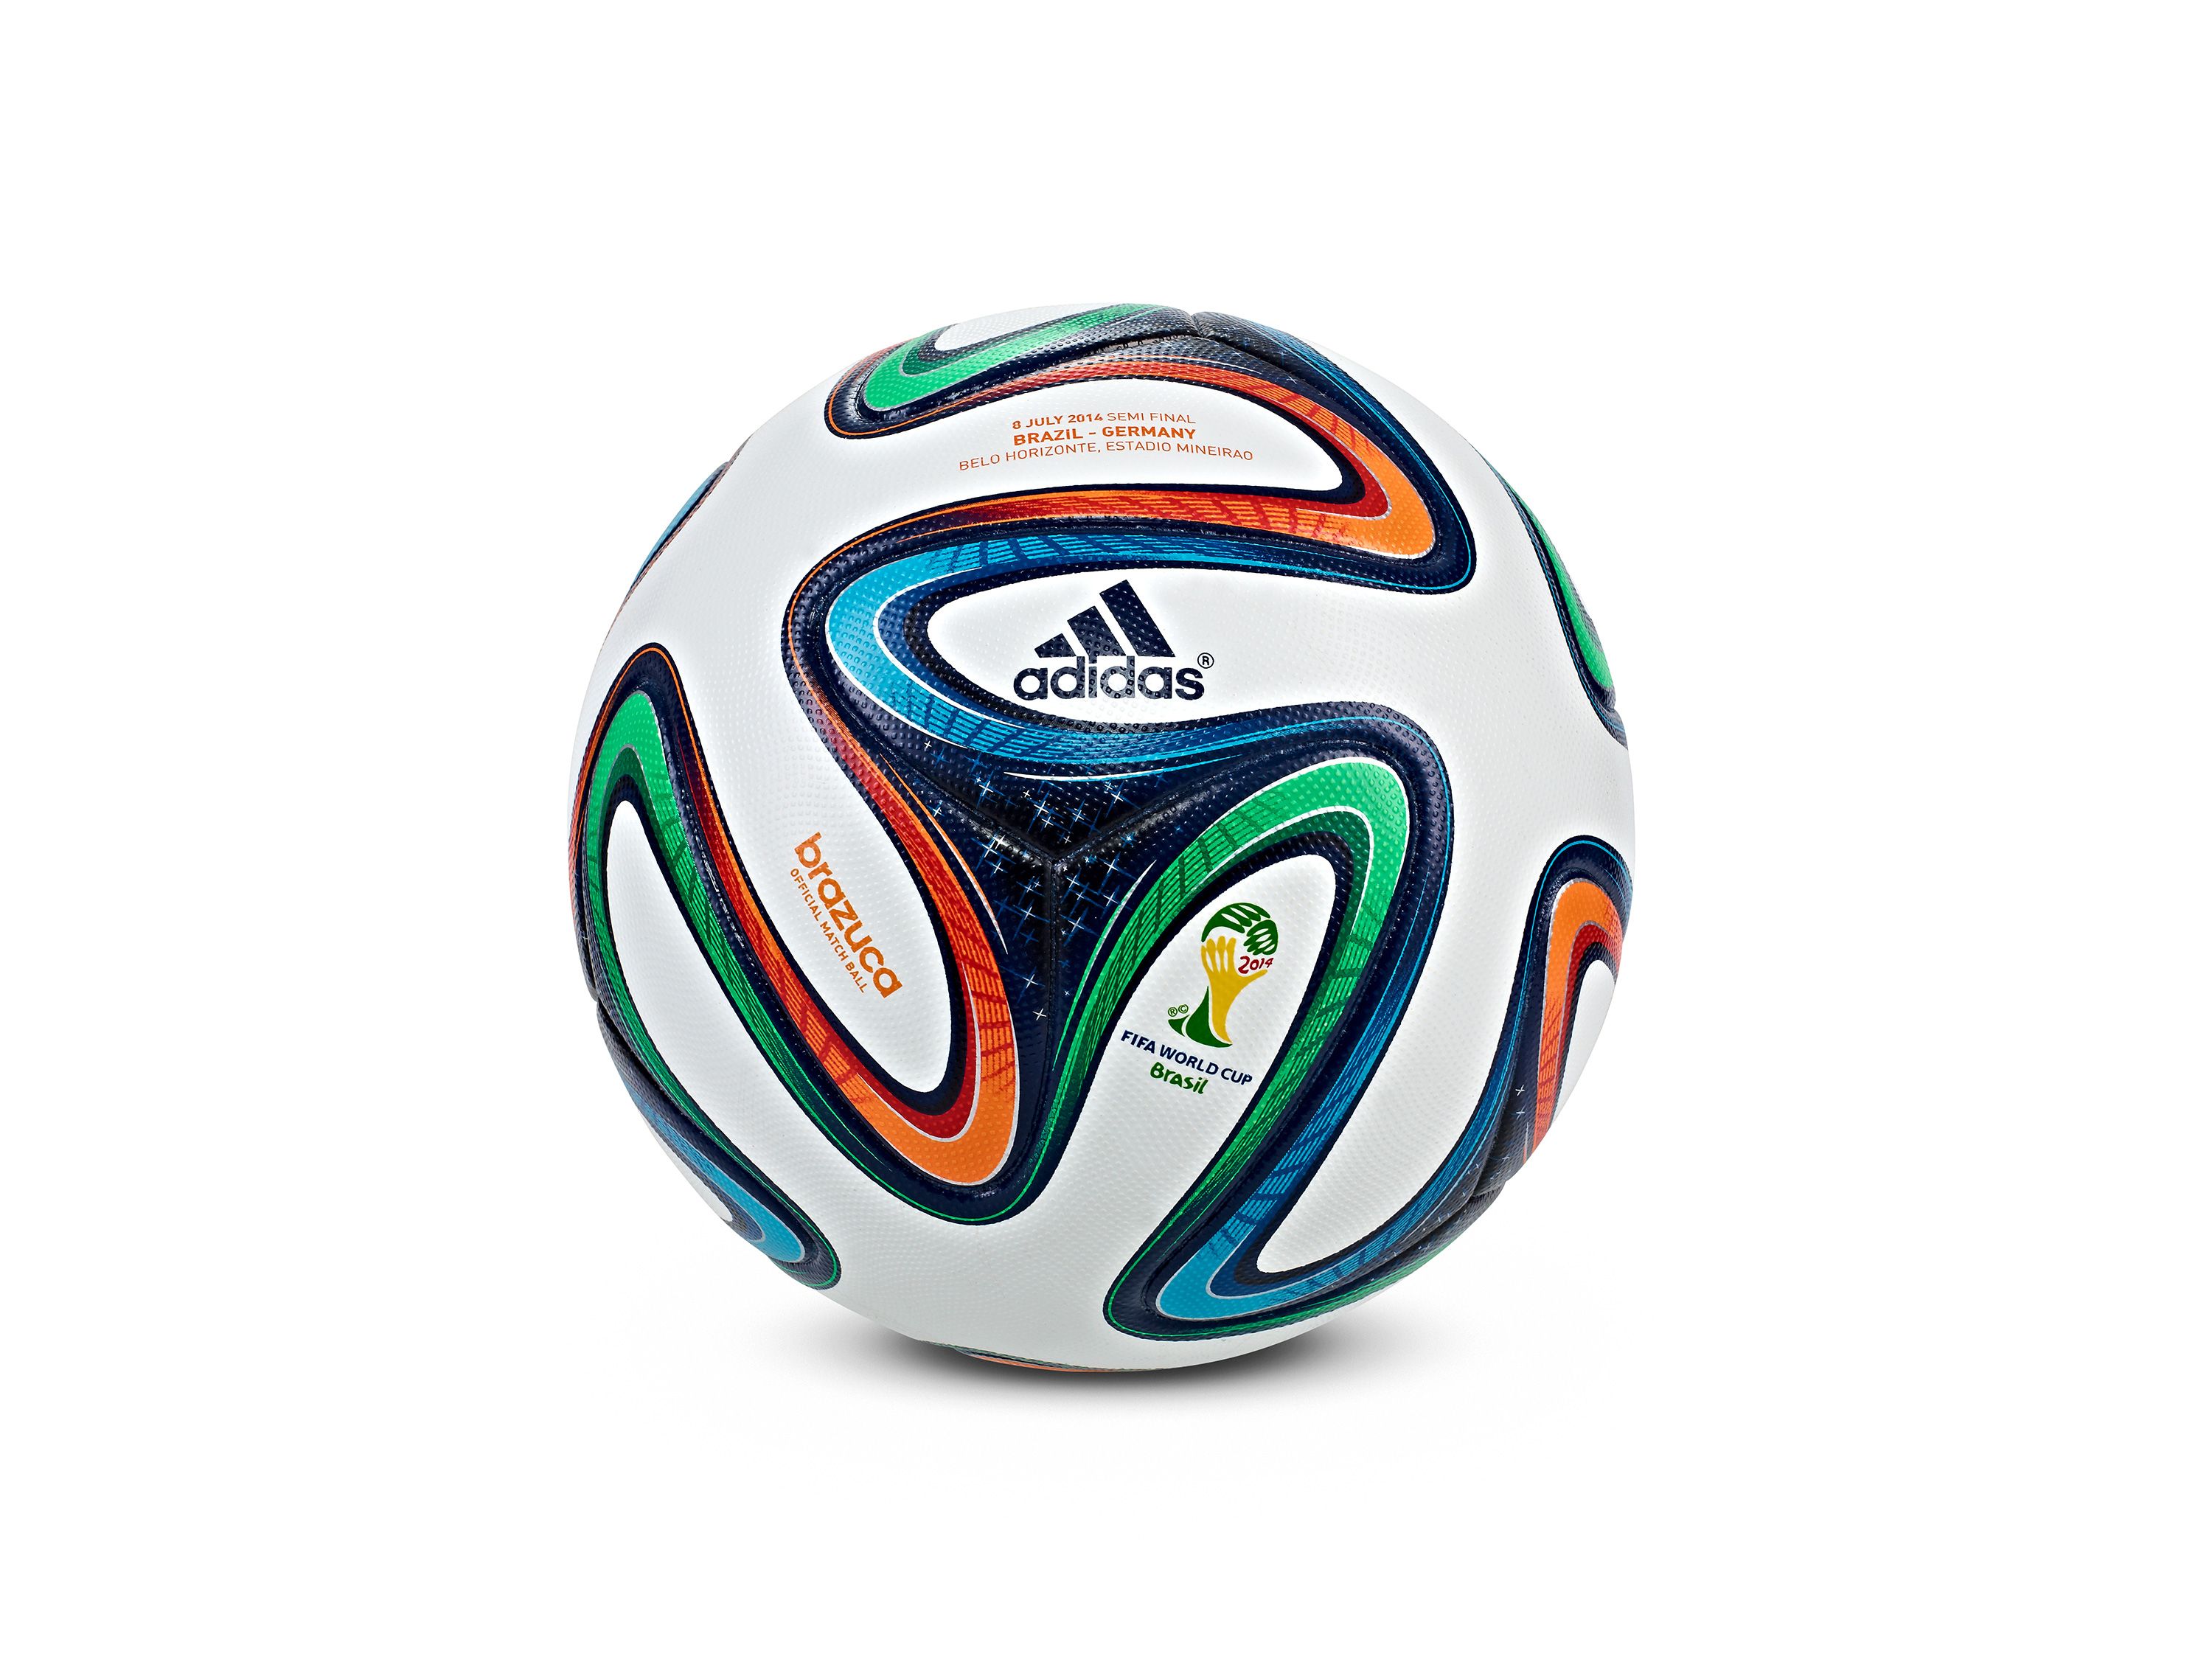 Louis Vuitton mete en un baúl muy especial 13 balones oficiales de los  mundiales de fútbol